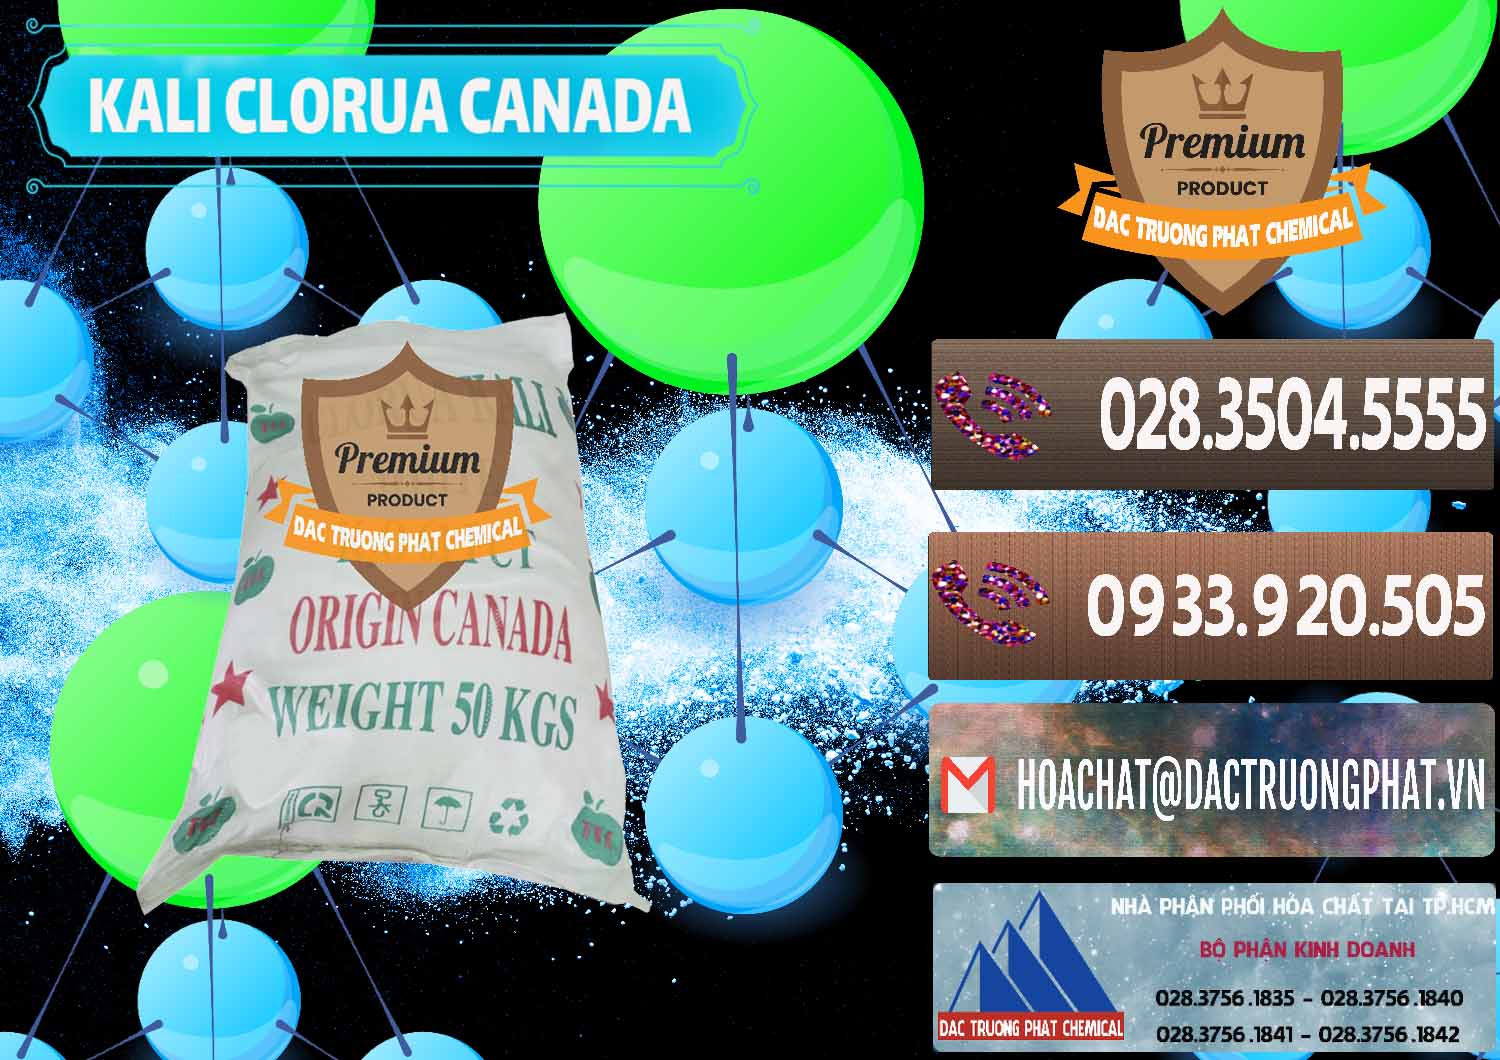 Cty chuyên phân phối & bán KCL – Kali Clorua Trắng Canada - 0437 - Nơi chuyên nhập khẩu và phân phối hóa chất tại TP.HCM - hoachatviet.net